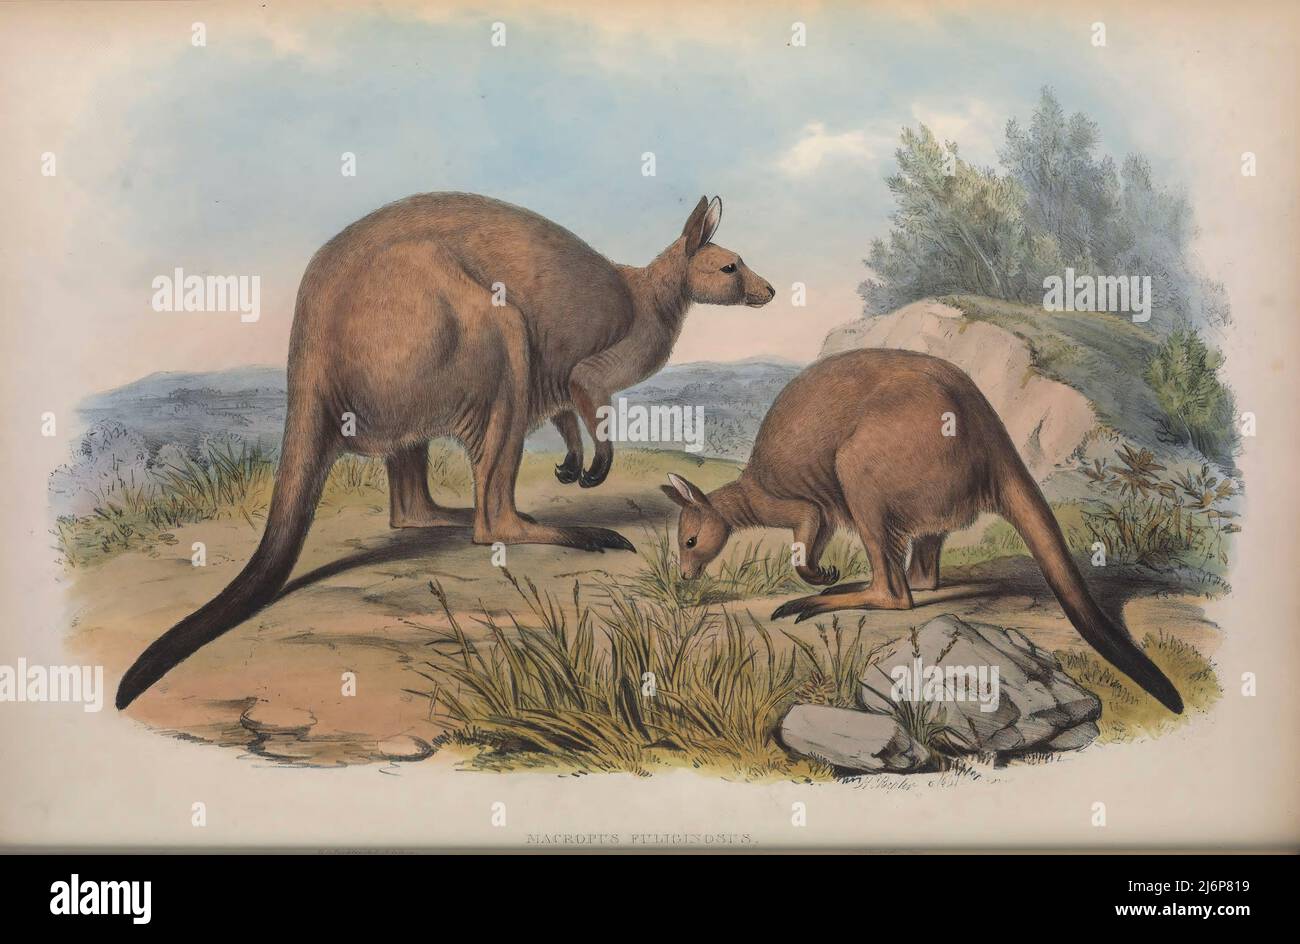 Das westliche graue Känguru (Macropus fuliginosus), auch als westliches graues Riesenkänguru bezeichnet, das schwarze Känguru, das mallee-Känguru, Und das rußige Känguru[4] ist ein großes und sehr häufiges Känguru, das fast im gesamten südlichen Teil Australiens, von südlich der Shark Bay über die Küsten Westaustraliens und Südaustraliens bis ins westliche Victoria und im gesamten Murray-Darling-Becken in New South Wales und Queensland, gefunden wird. Natural History Artwork aus dem Buch "The Mammals of Australia" von John Gould, 1804-1881 Erscheinungsdatum 1863 Verlag London, gedruckt von Taylor und Francis Stockfoto